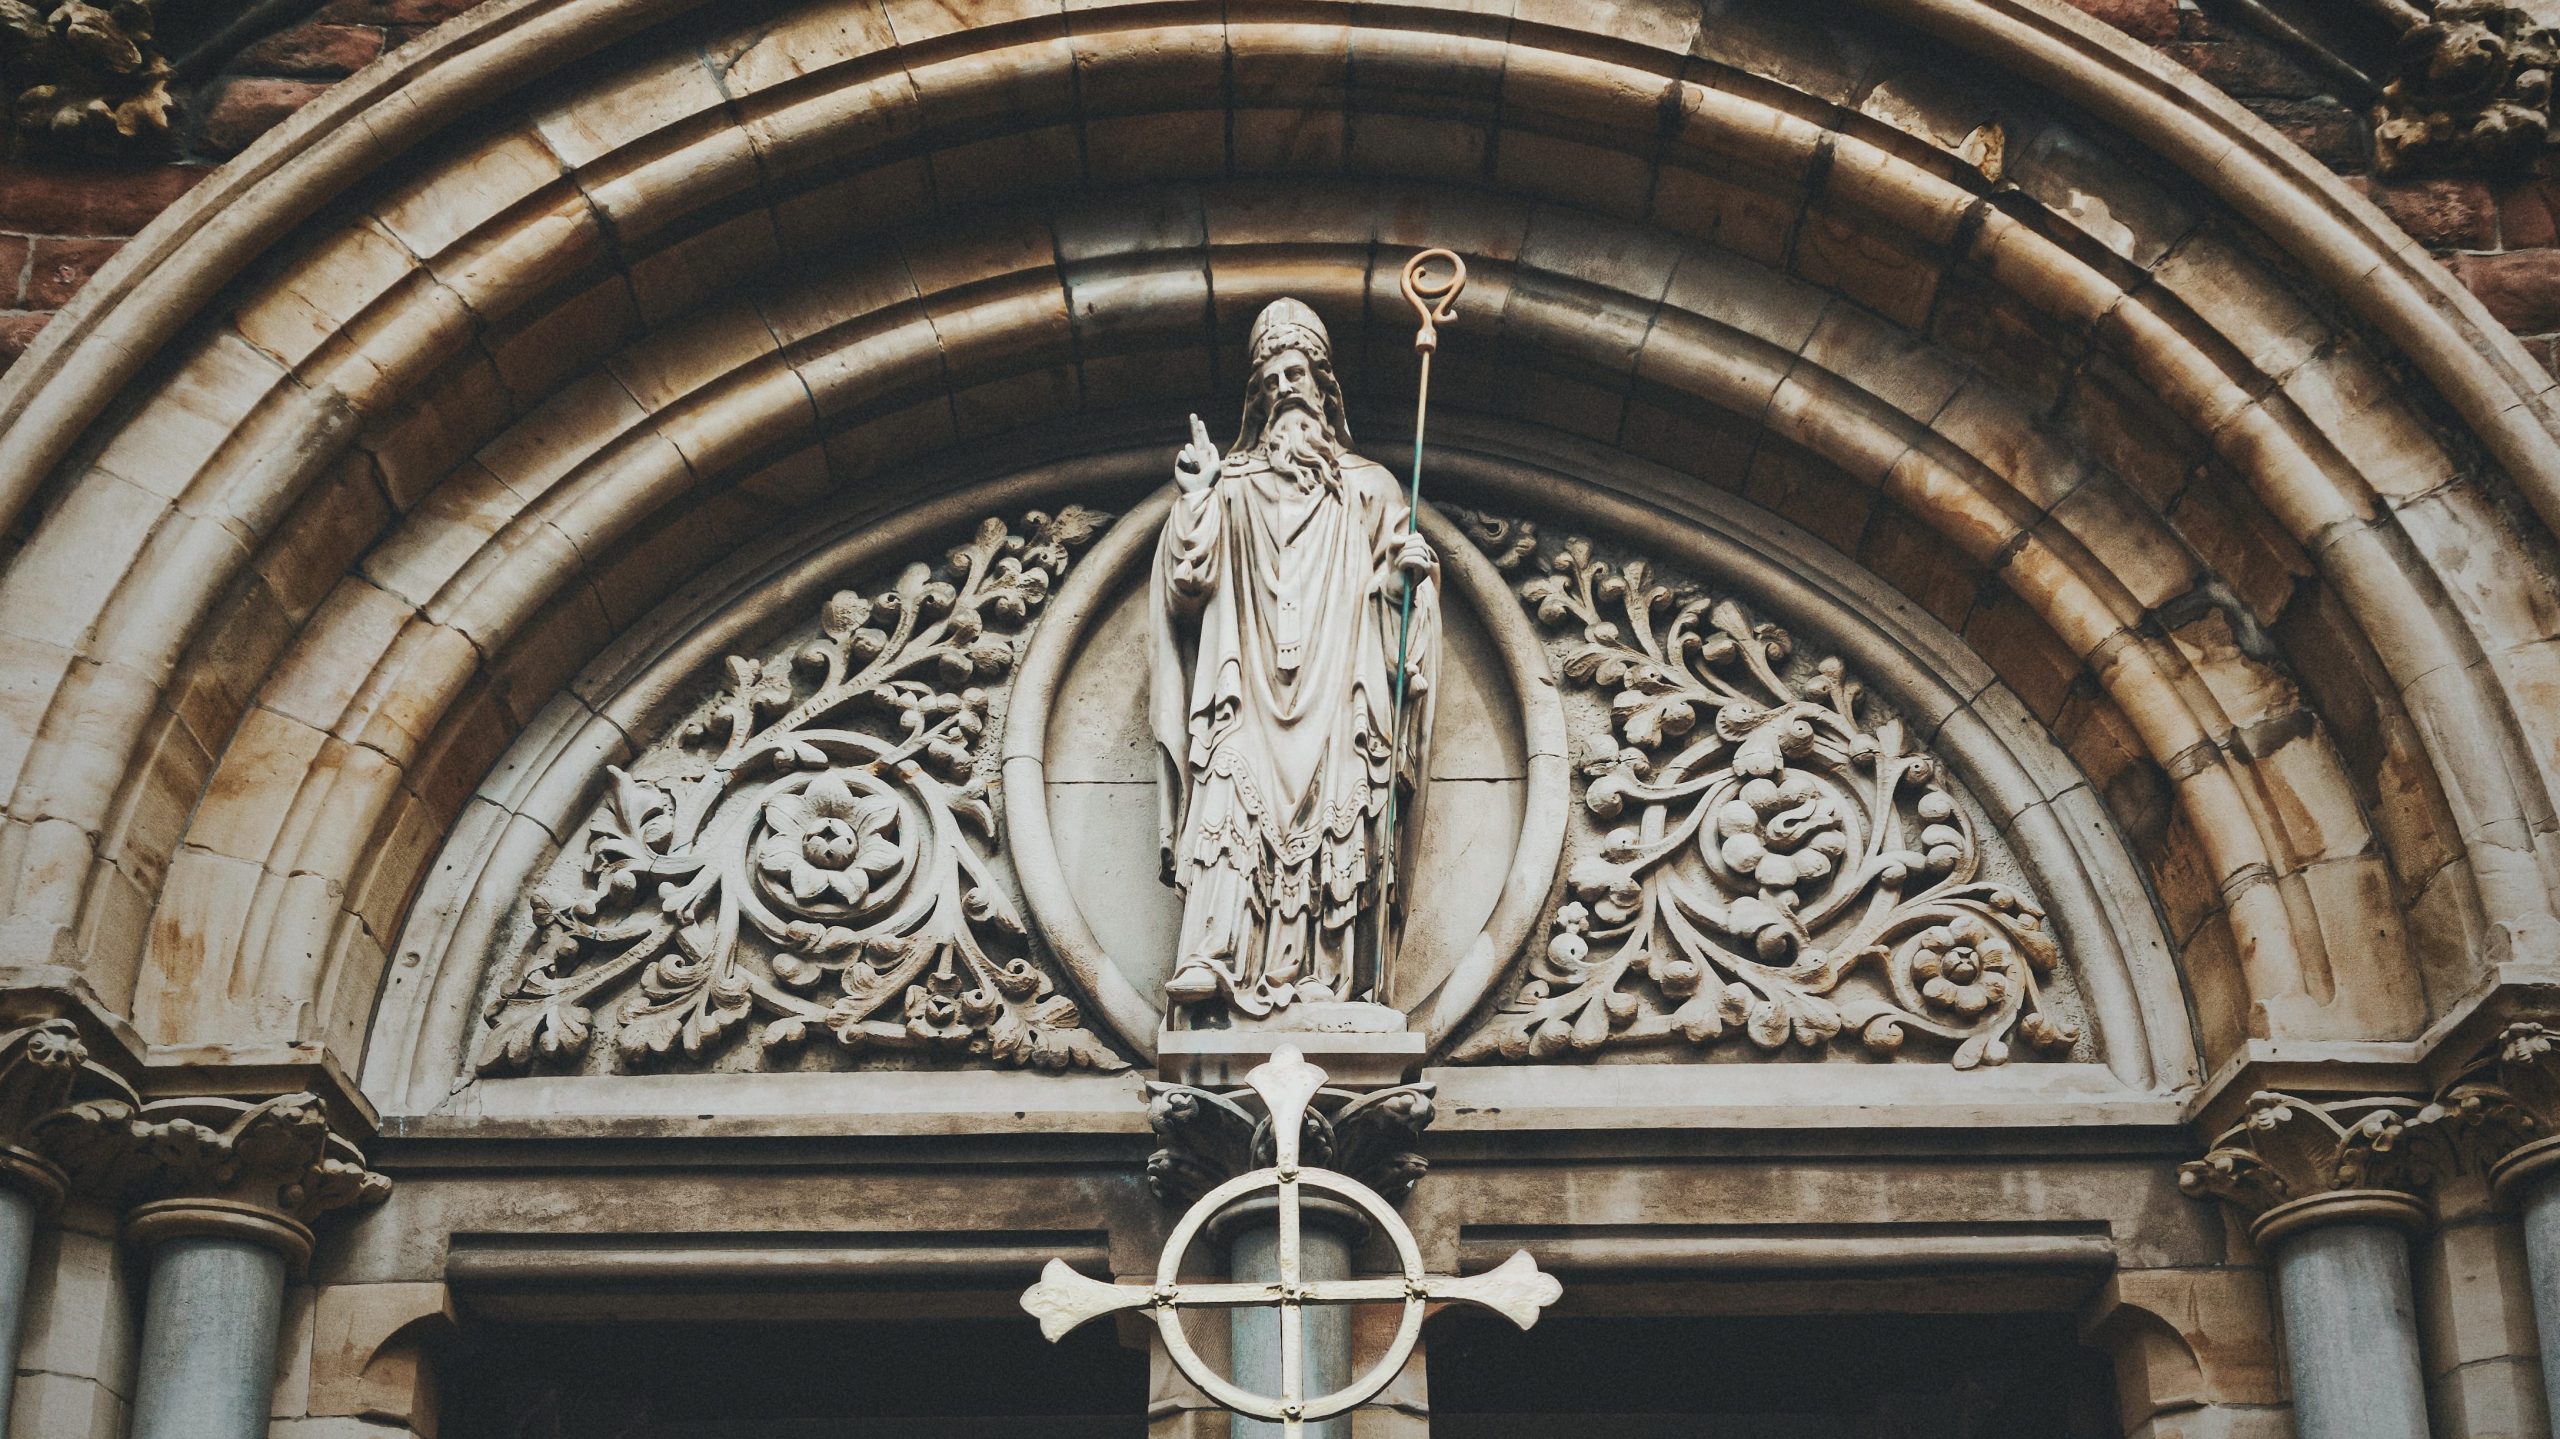 Statue of St. Patrick above the Church door in Belfast